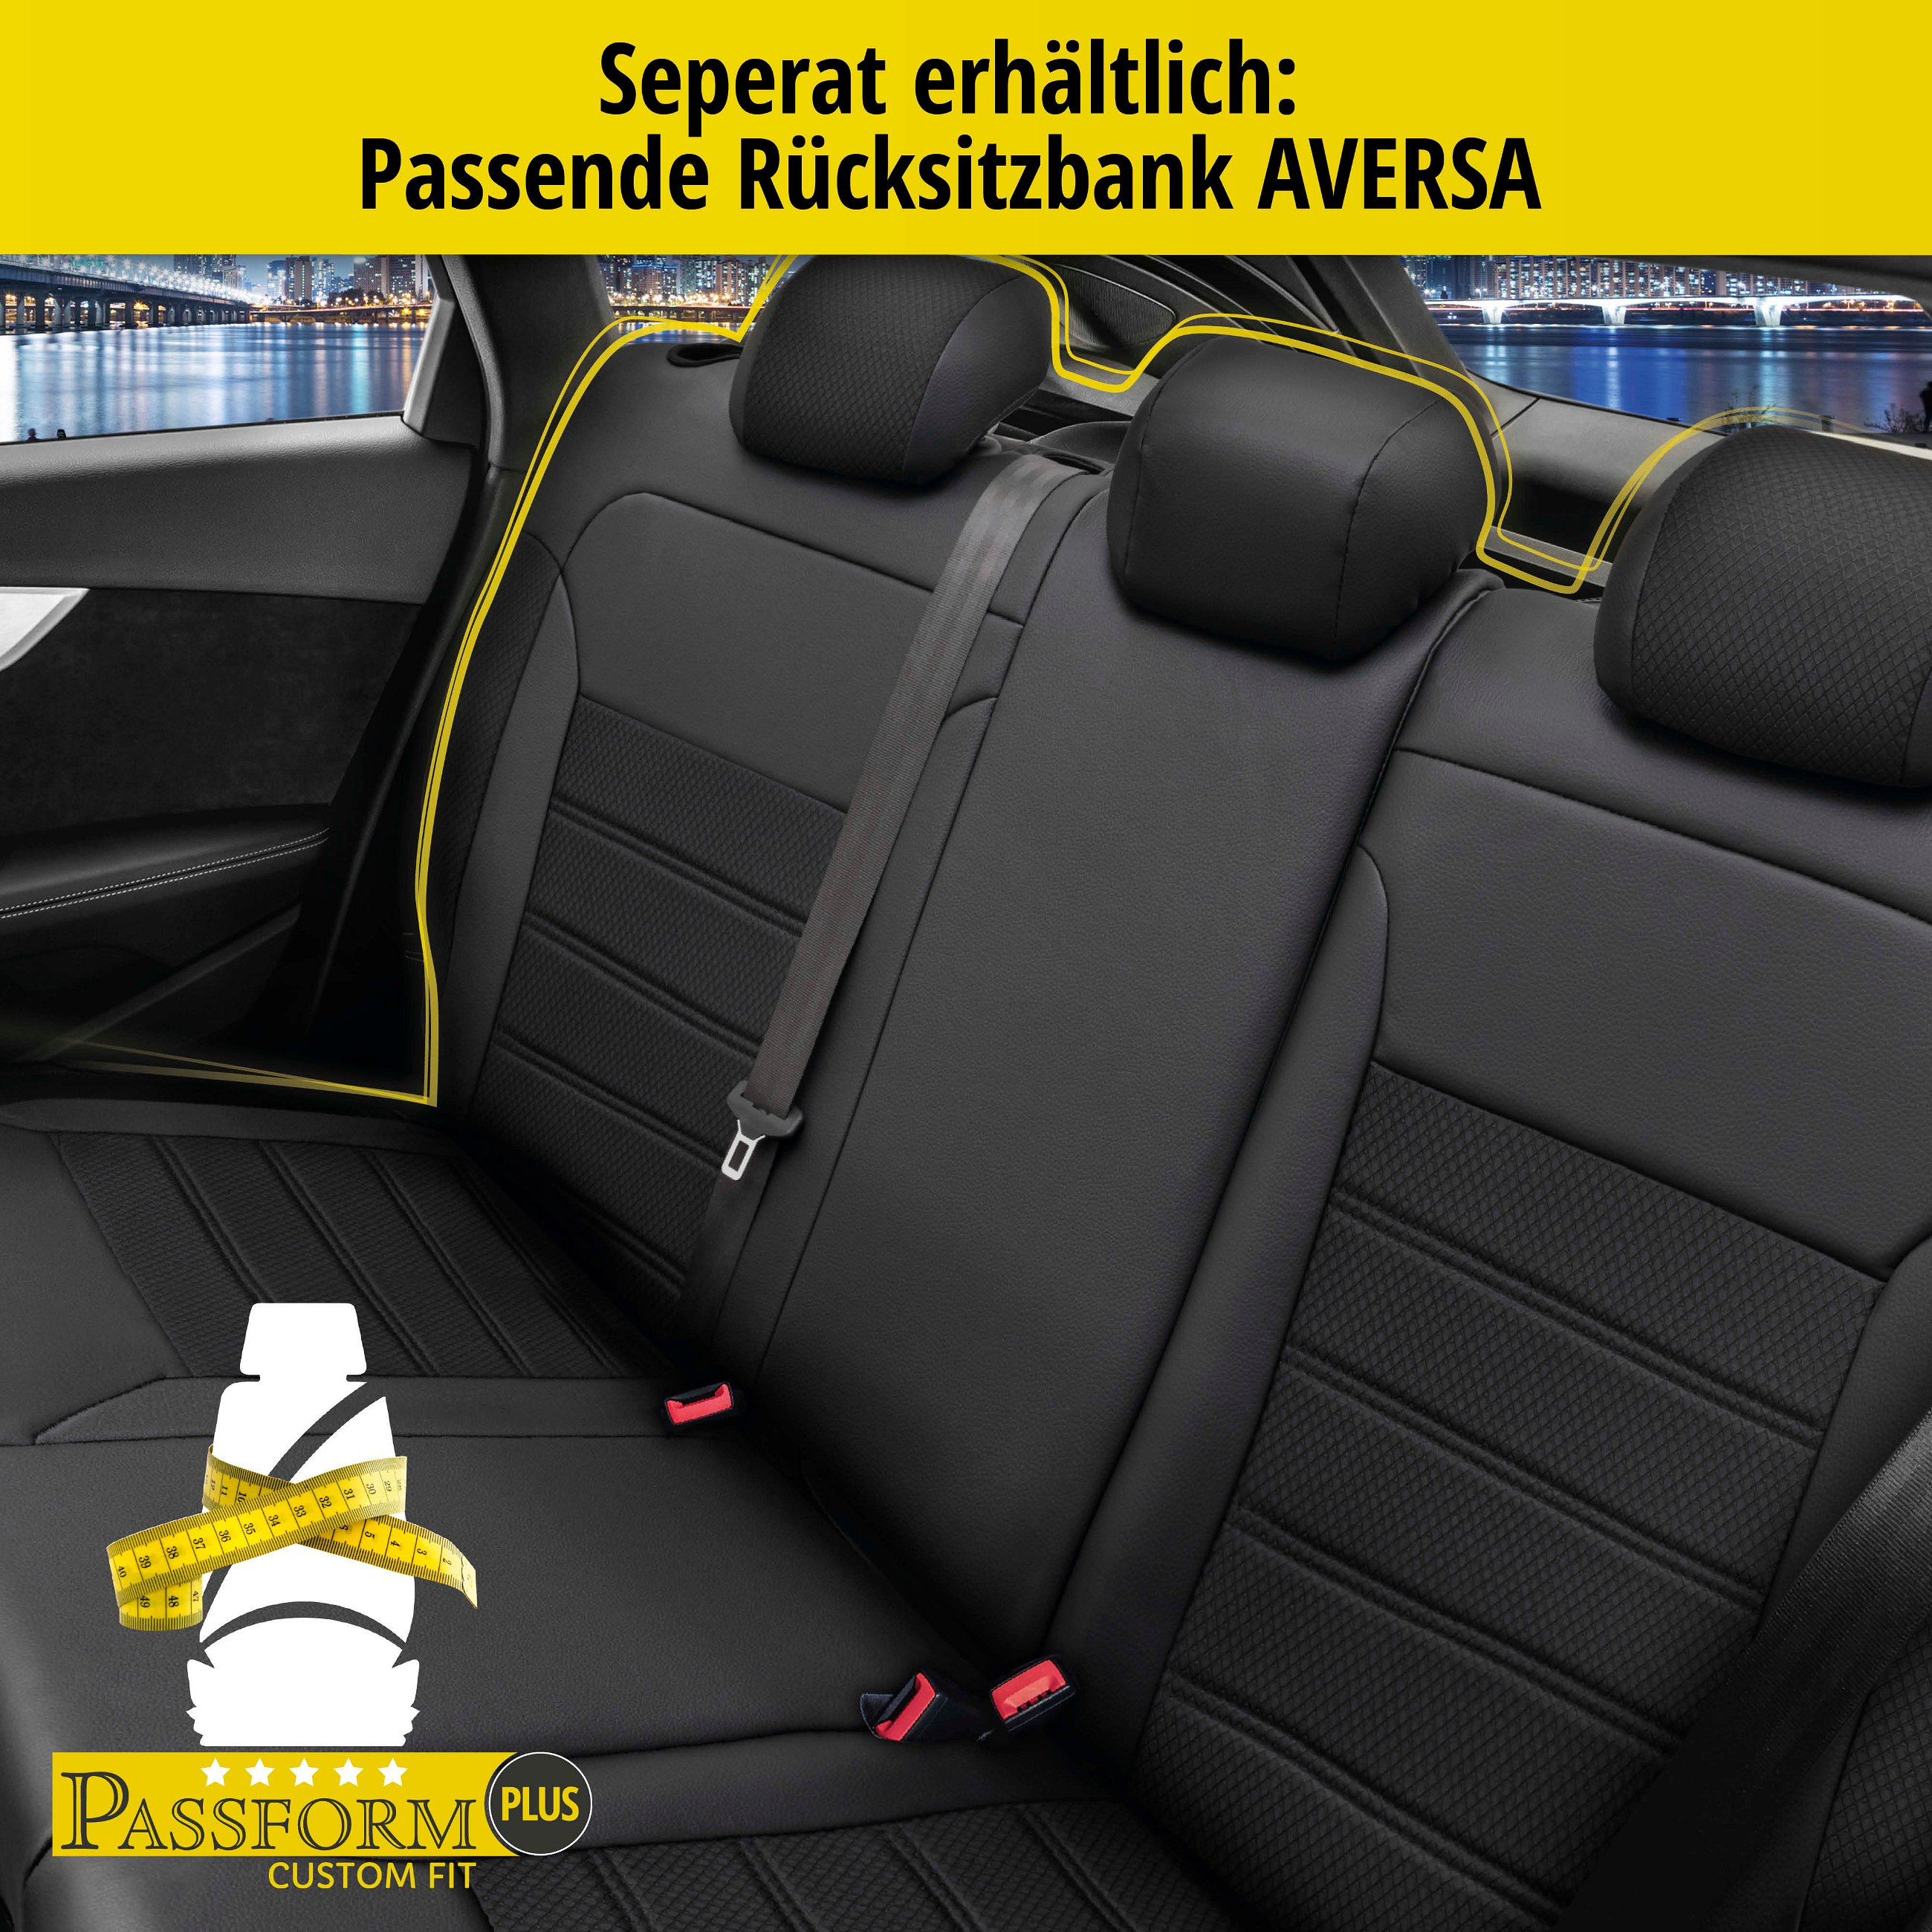 Passform Sitzbezug Aversa für Skoda Karoq 07/2017-Heute, 2 Einzelsitzbezüge für Normalsitze